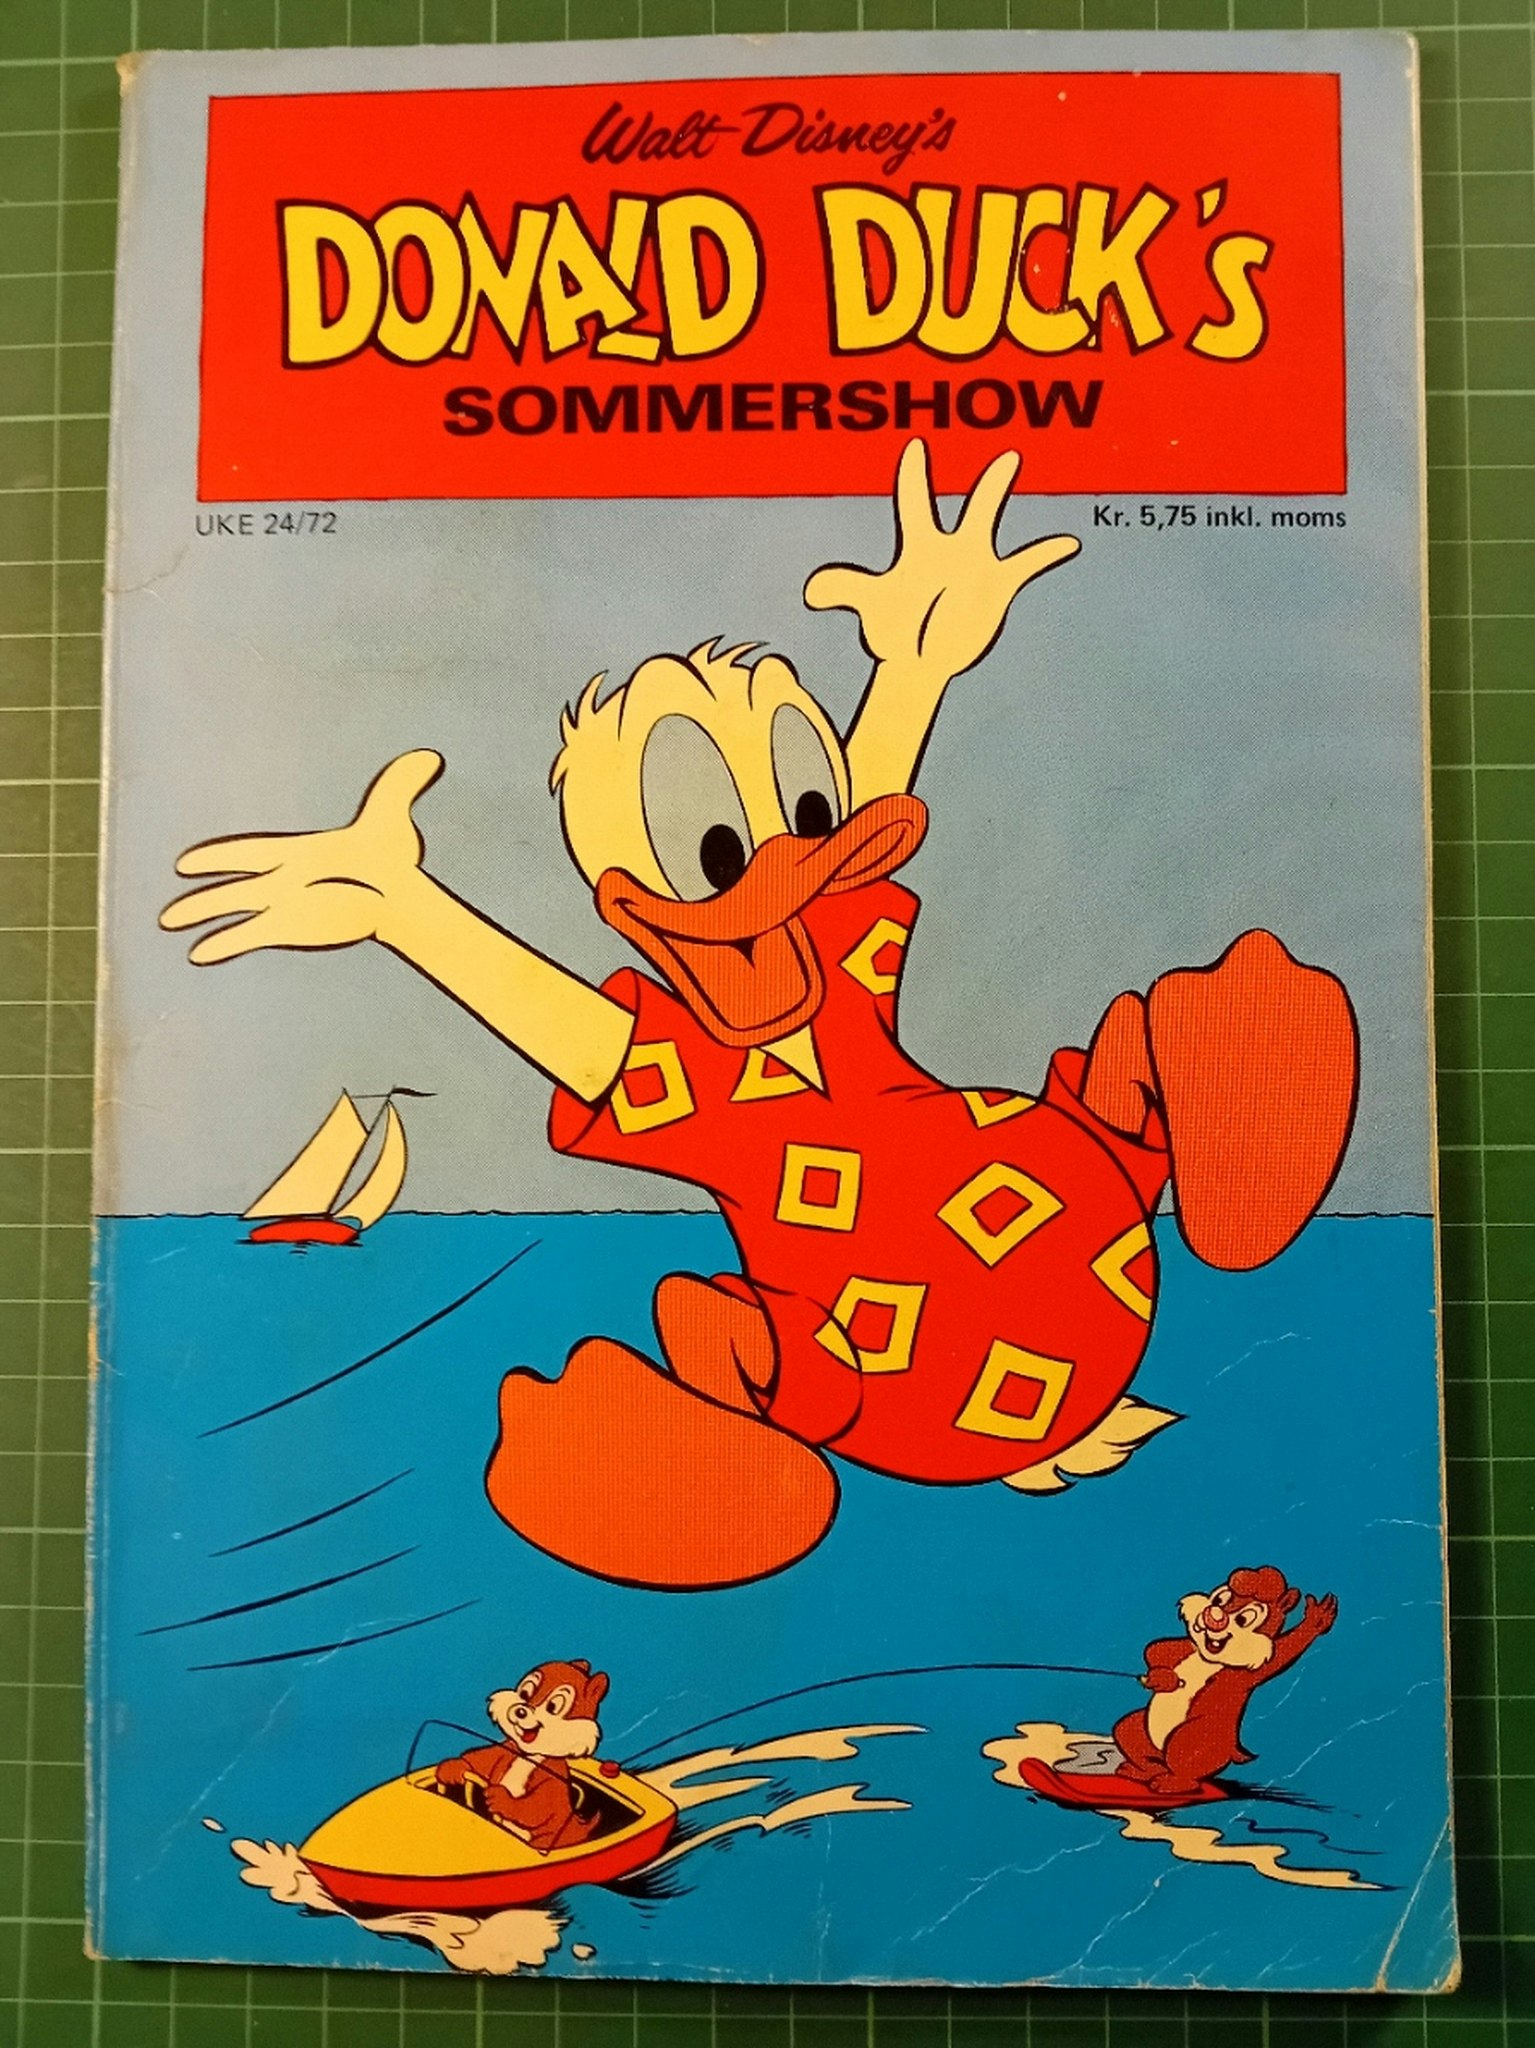 Donald Ducks 1972 Sommer show